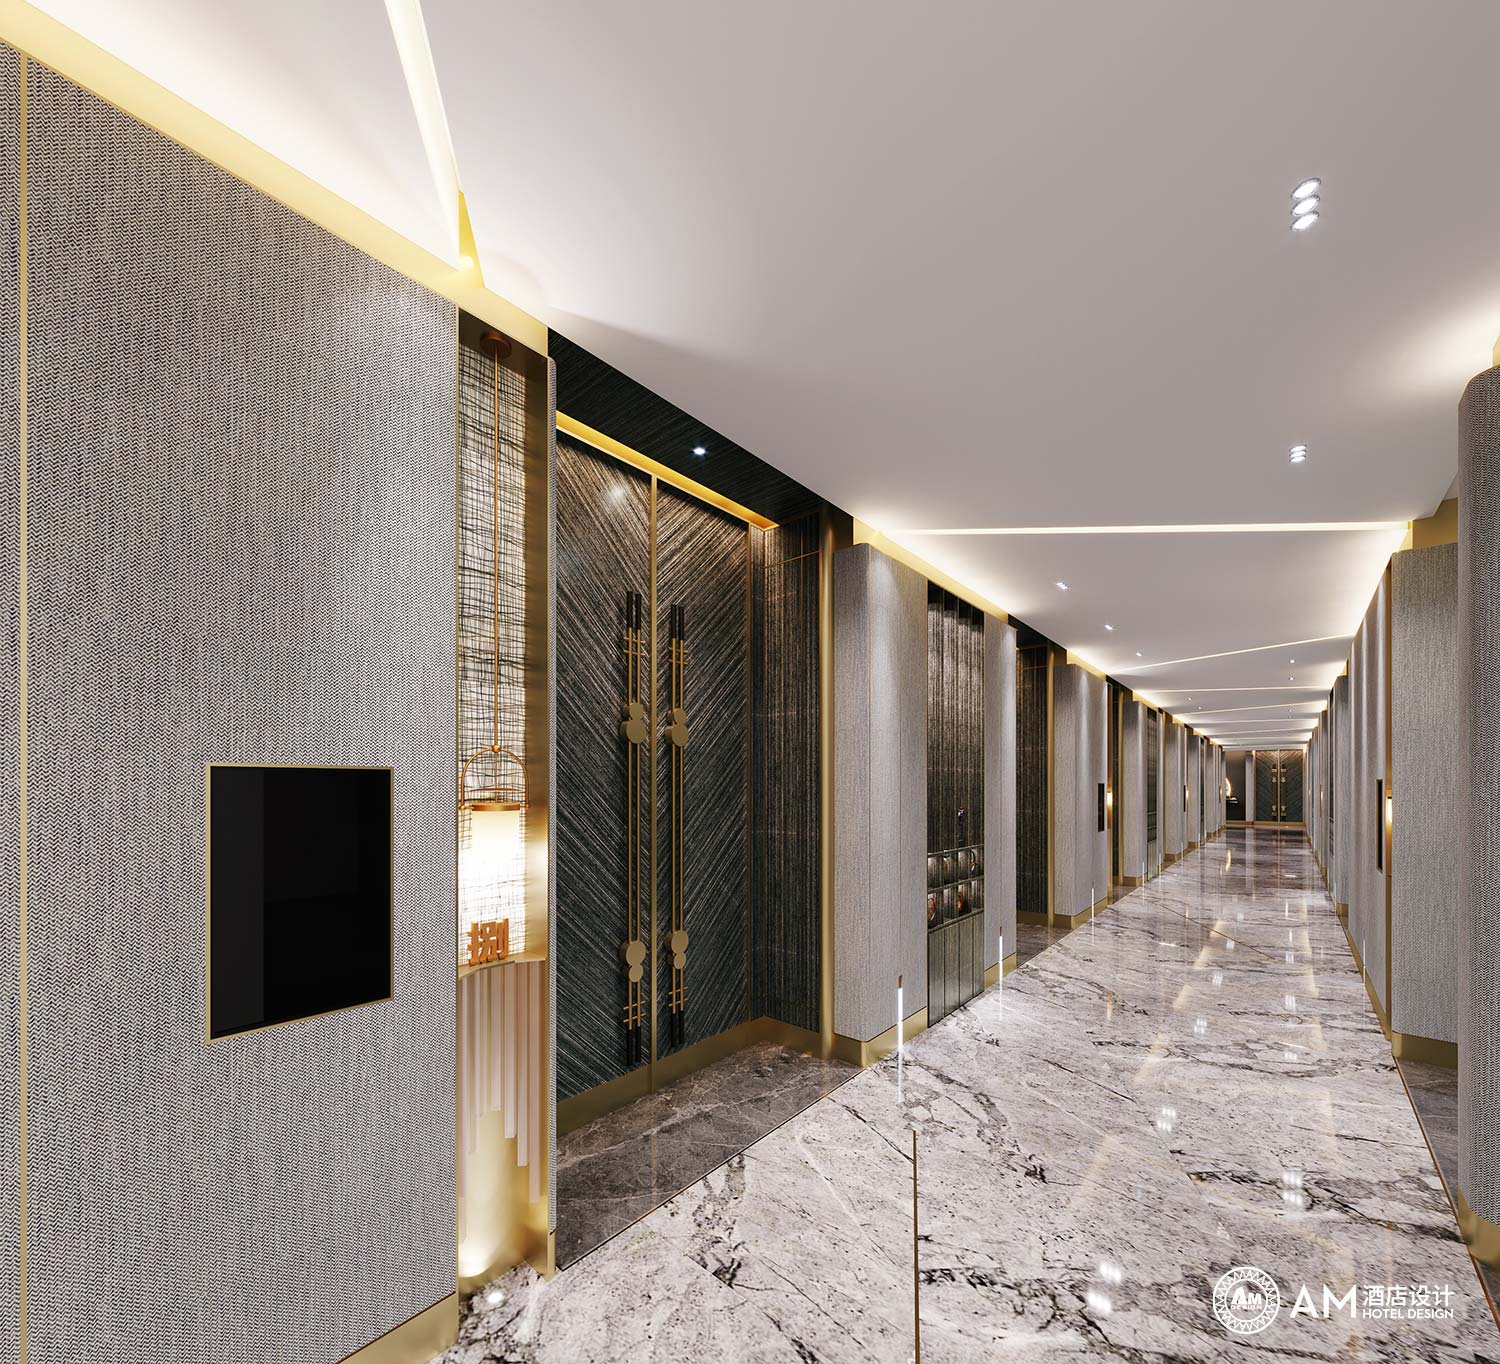 AM DESIGN | Corridor design of Baida Wanmei Hotel